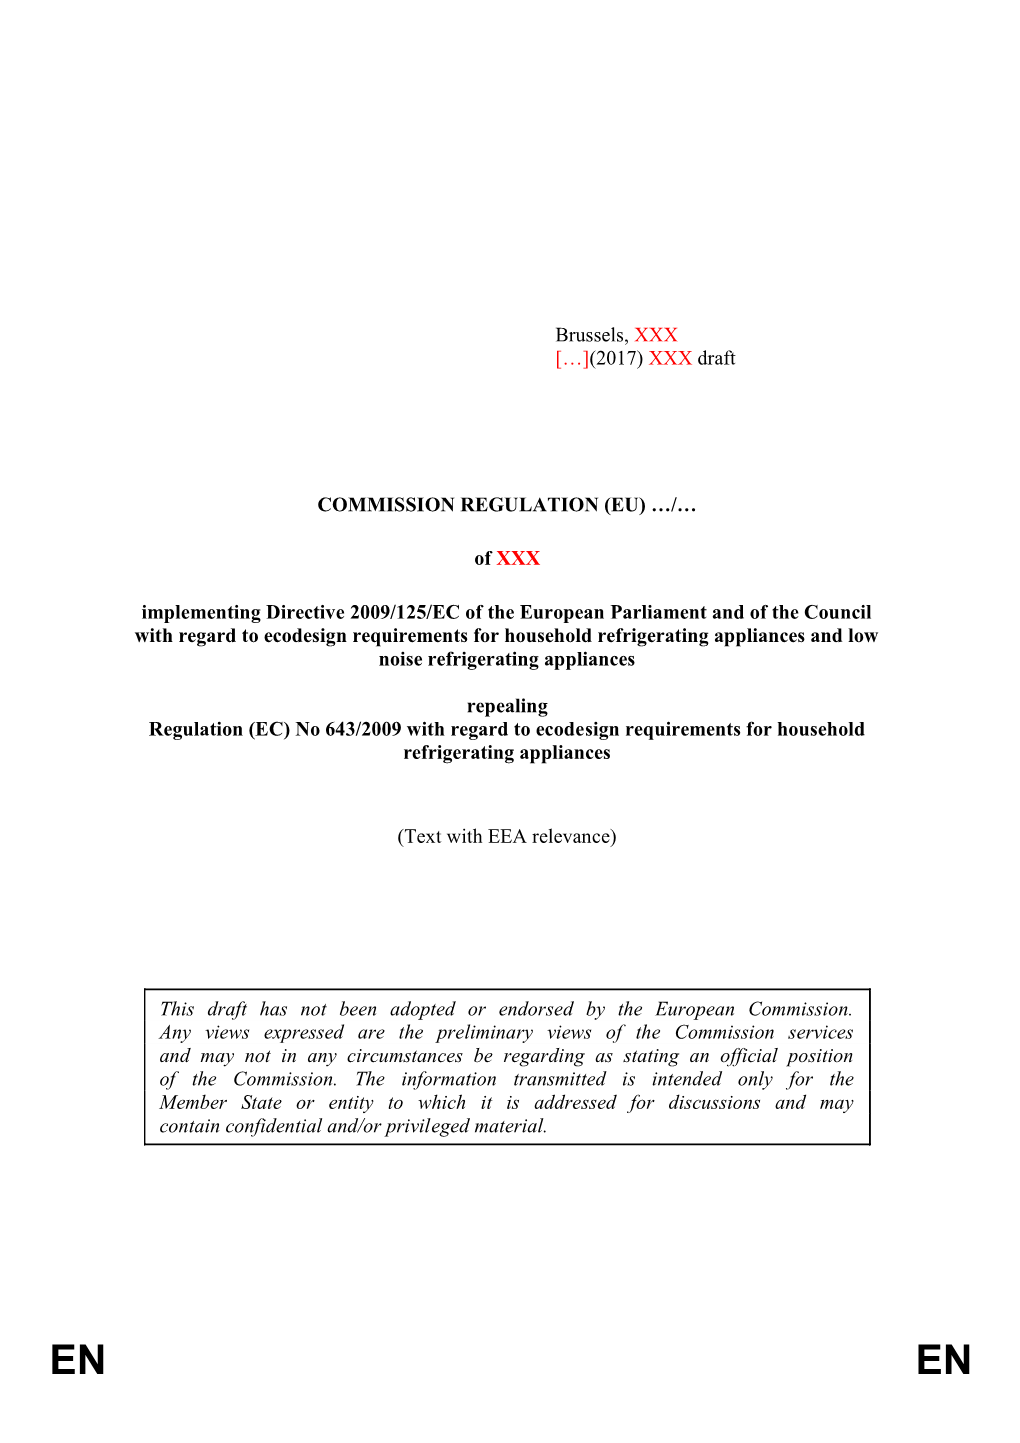 Commission Regulation (Eu)